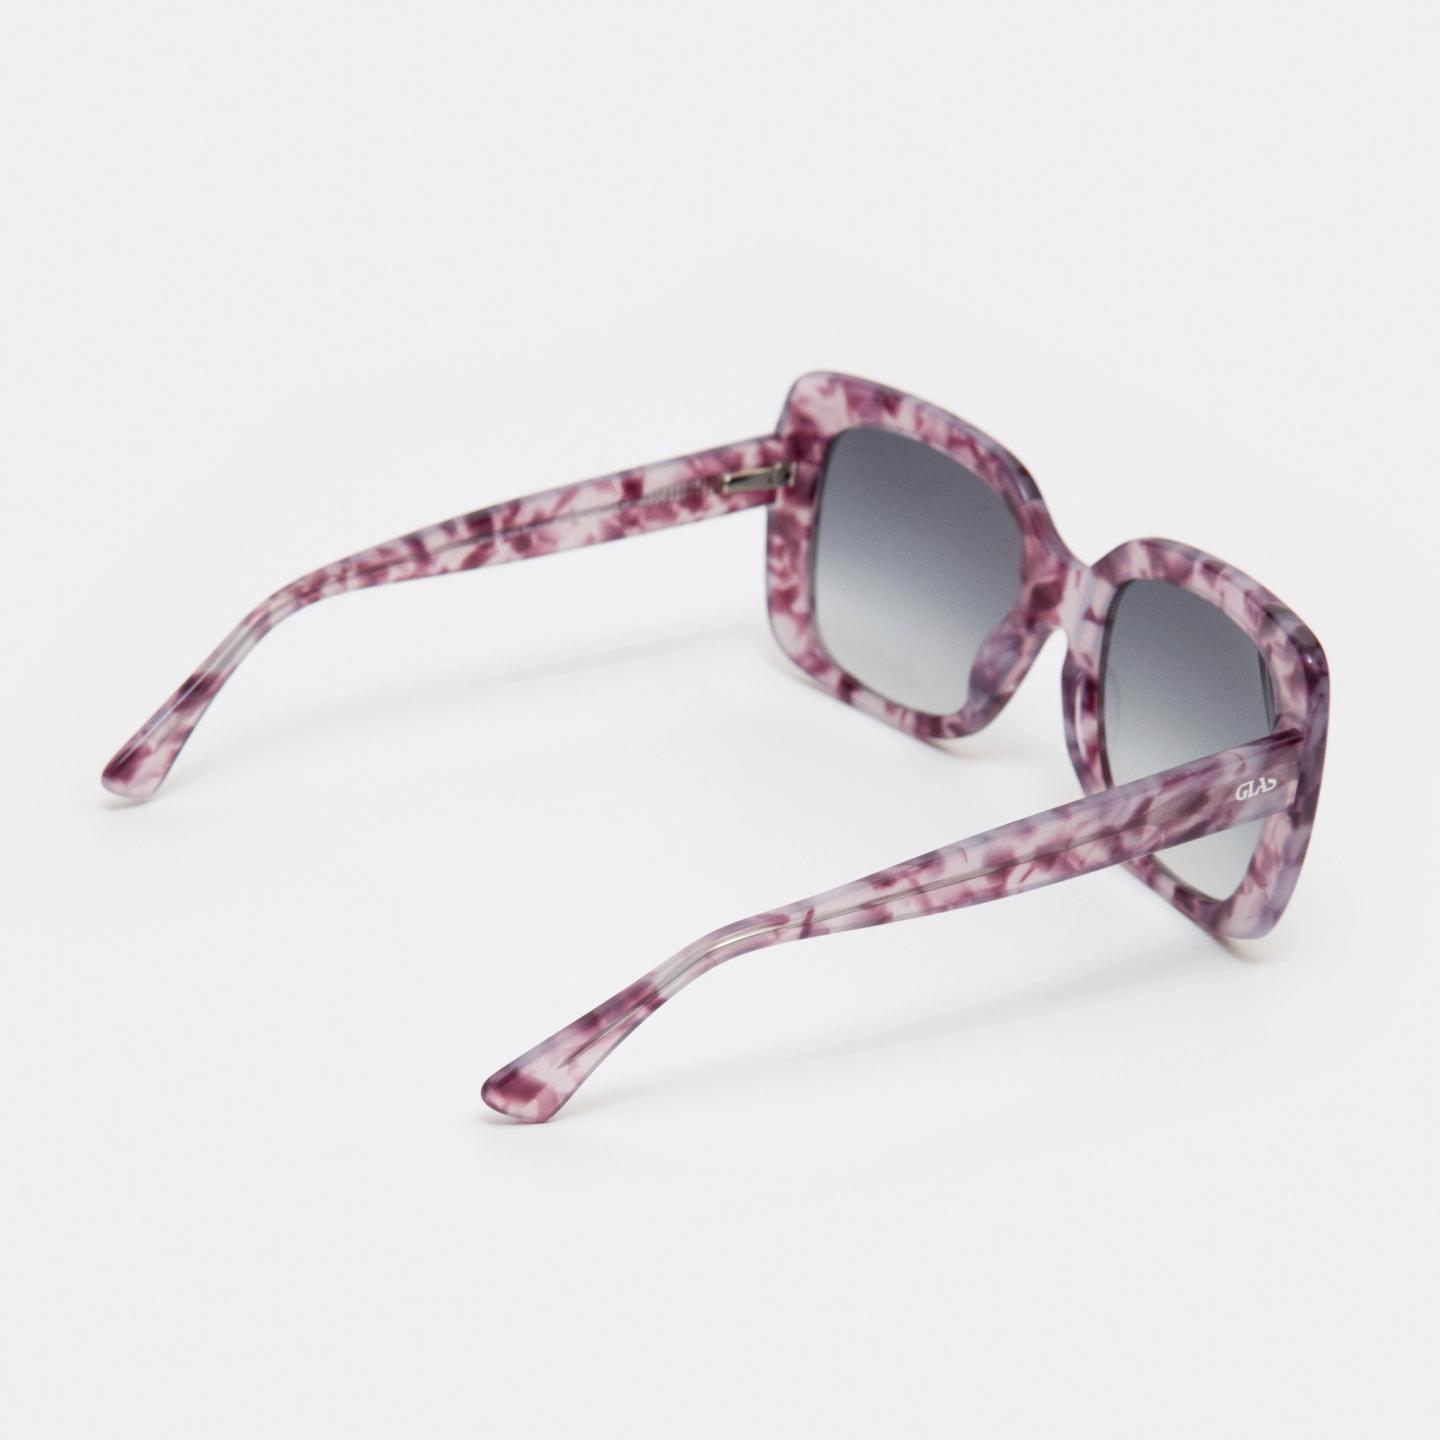 Mio Purple Marble Progressive Sunglasses